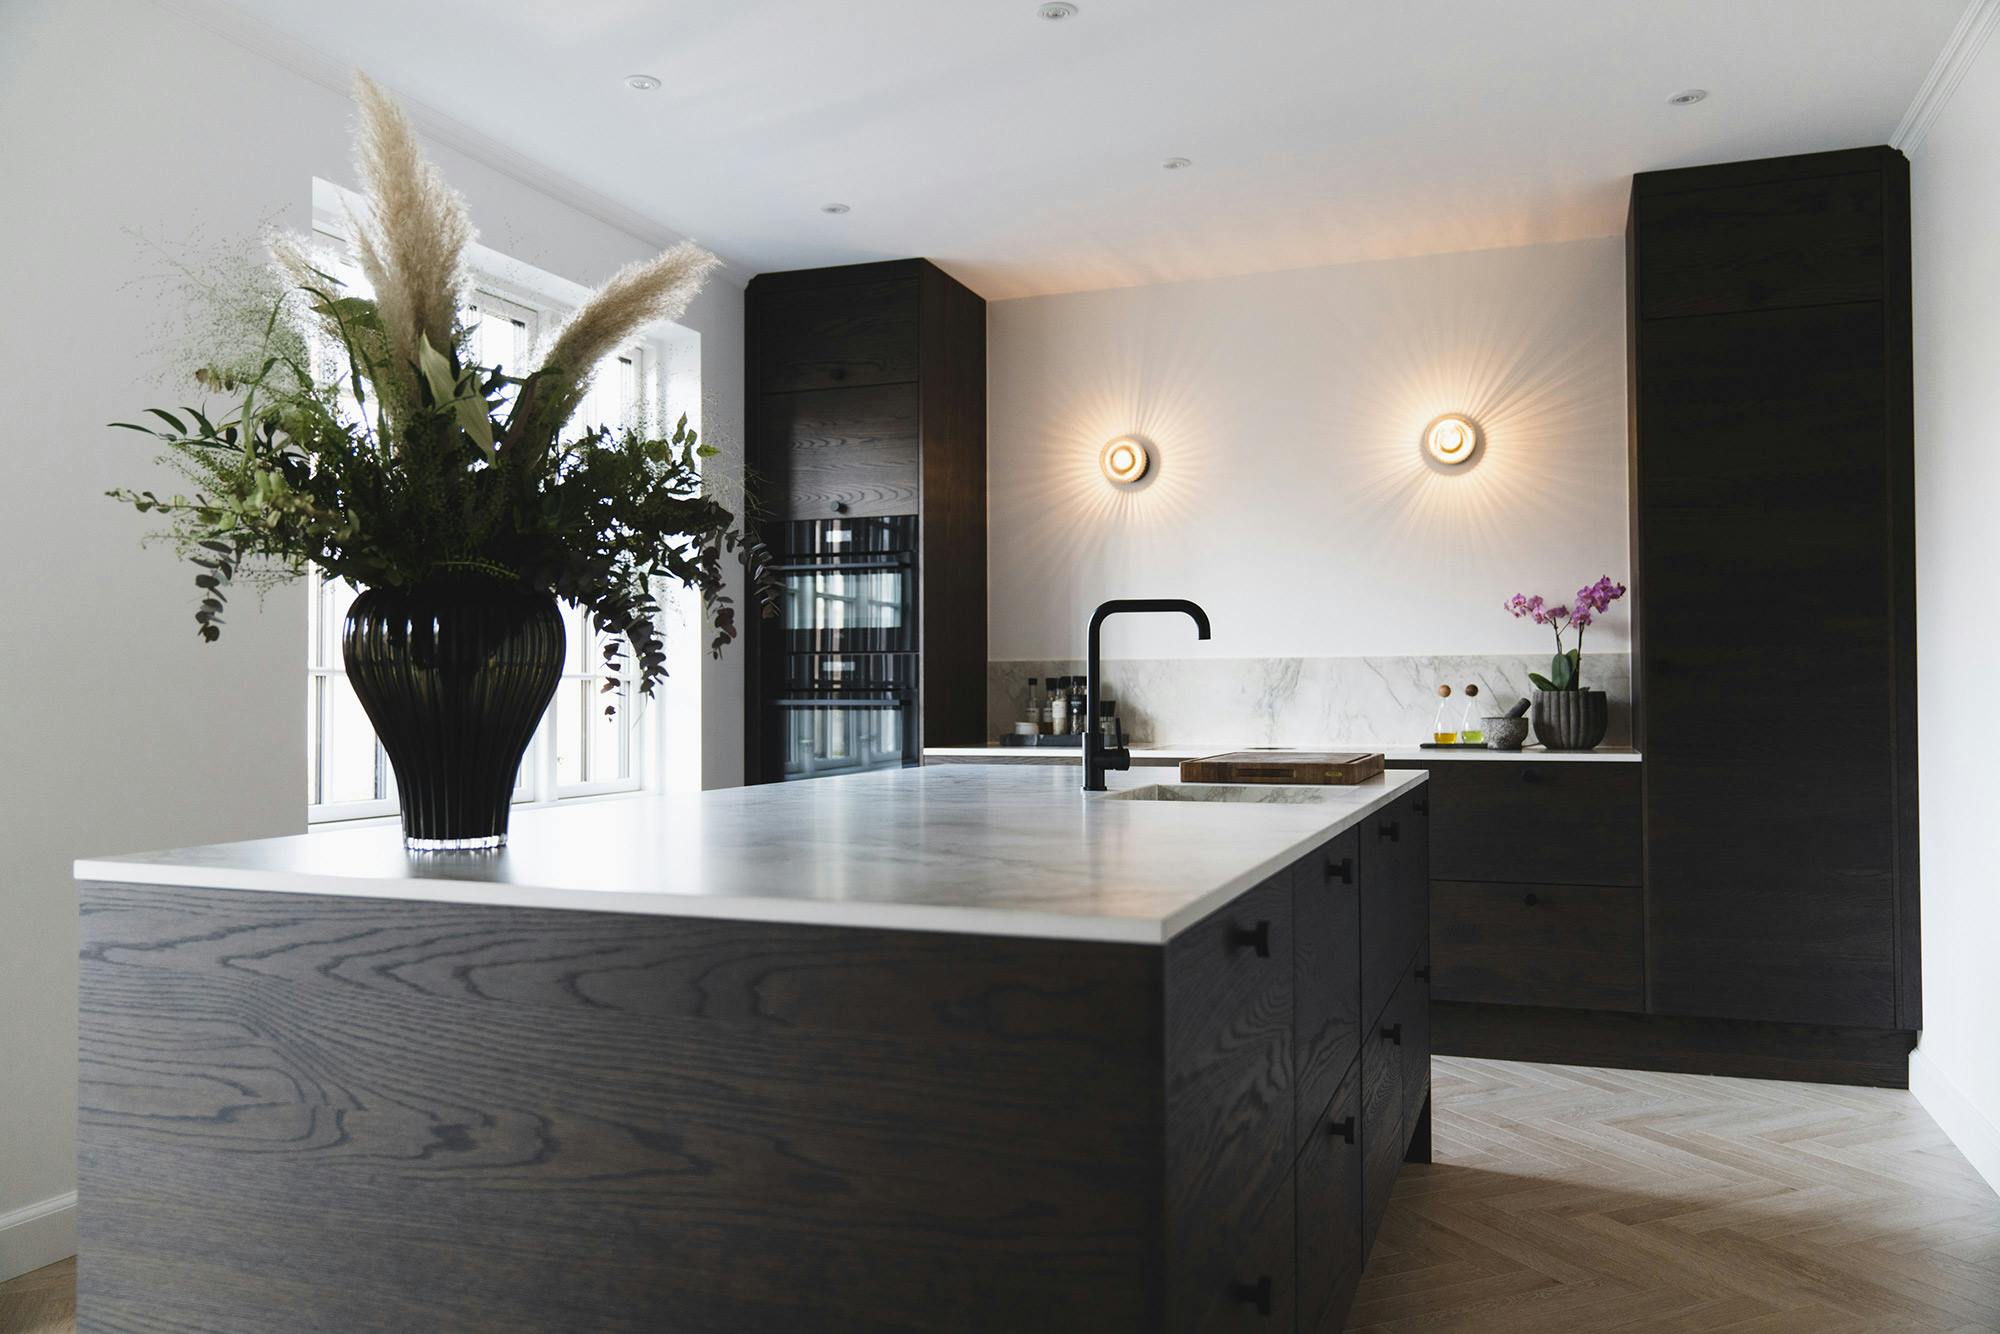 Bildnummer 34 des aktuellen Abschnitts von A classic yet minimalist kitchen complemented by DKTN’s elegance and functionality von Cosentino Deutschland